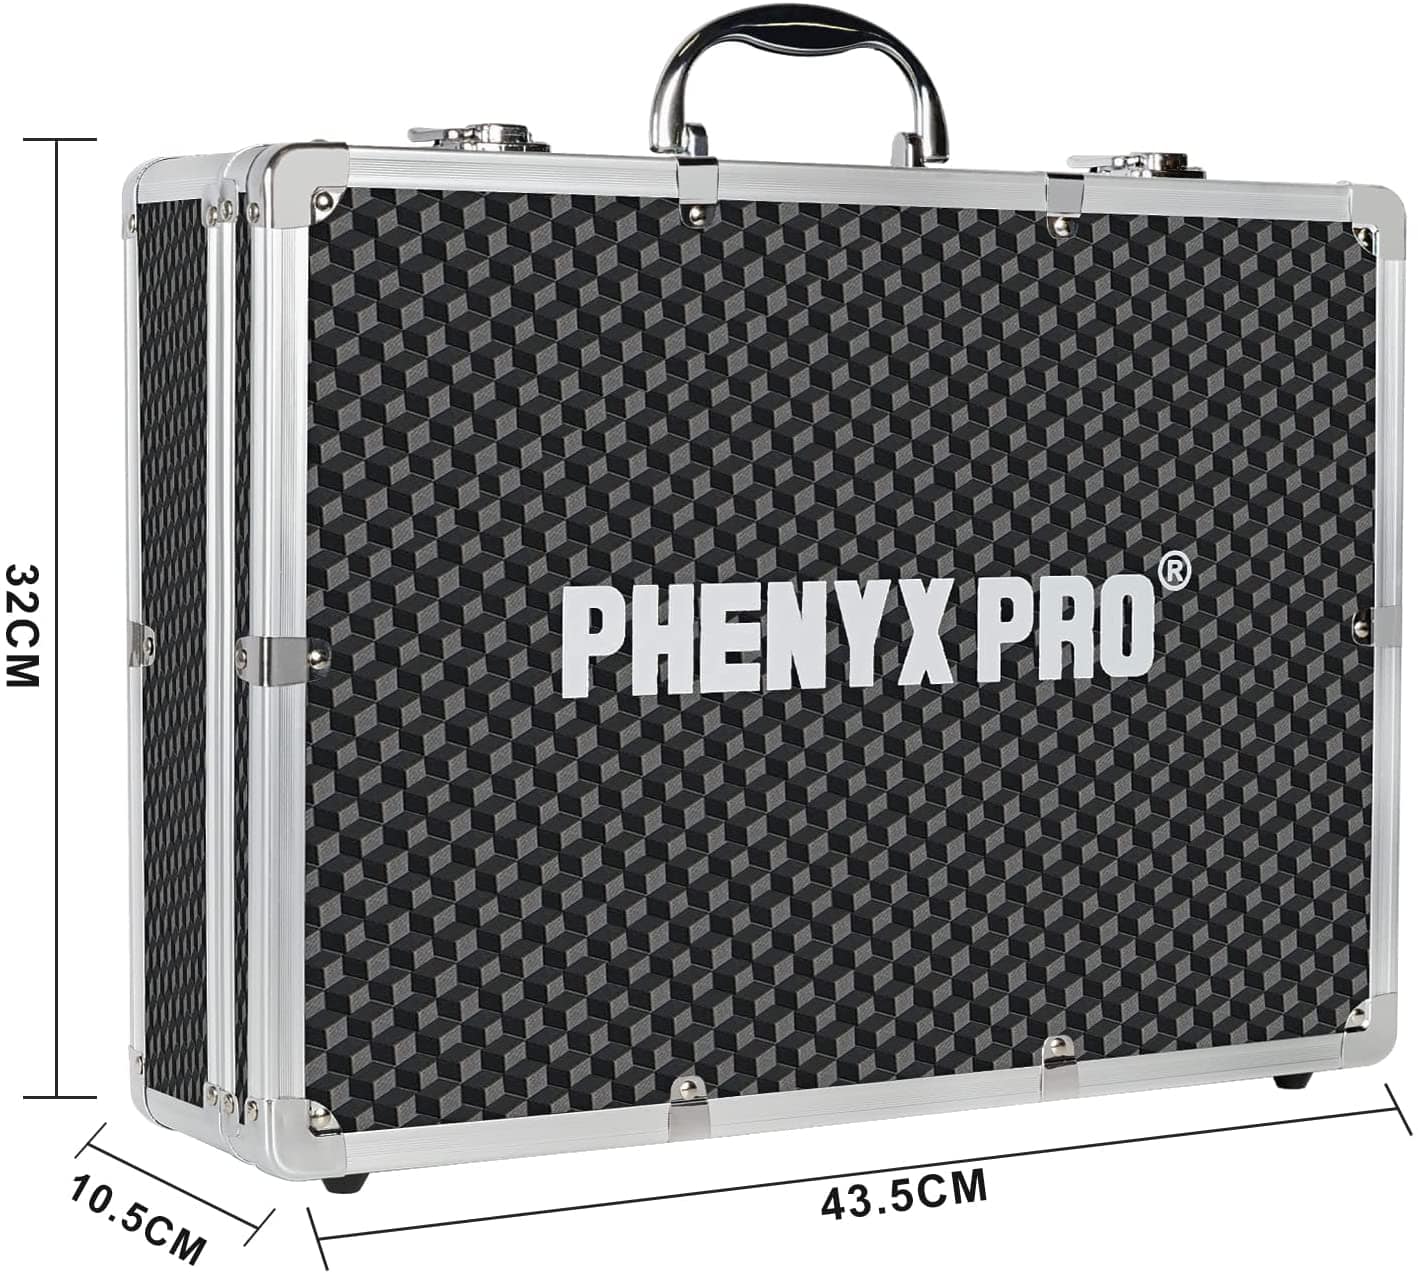 Phenyx Pro Carrying Case (Medium Size)